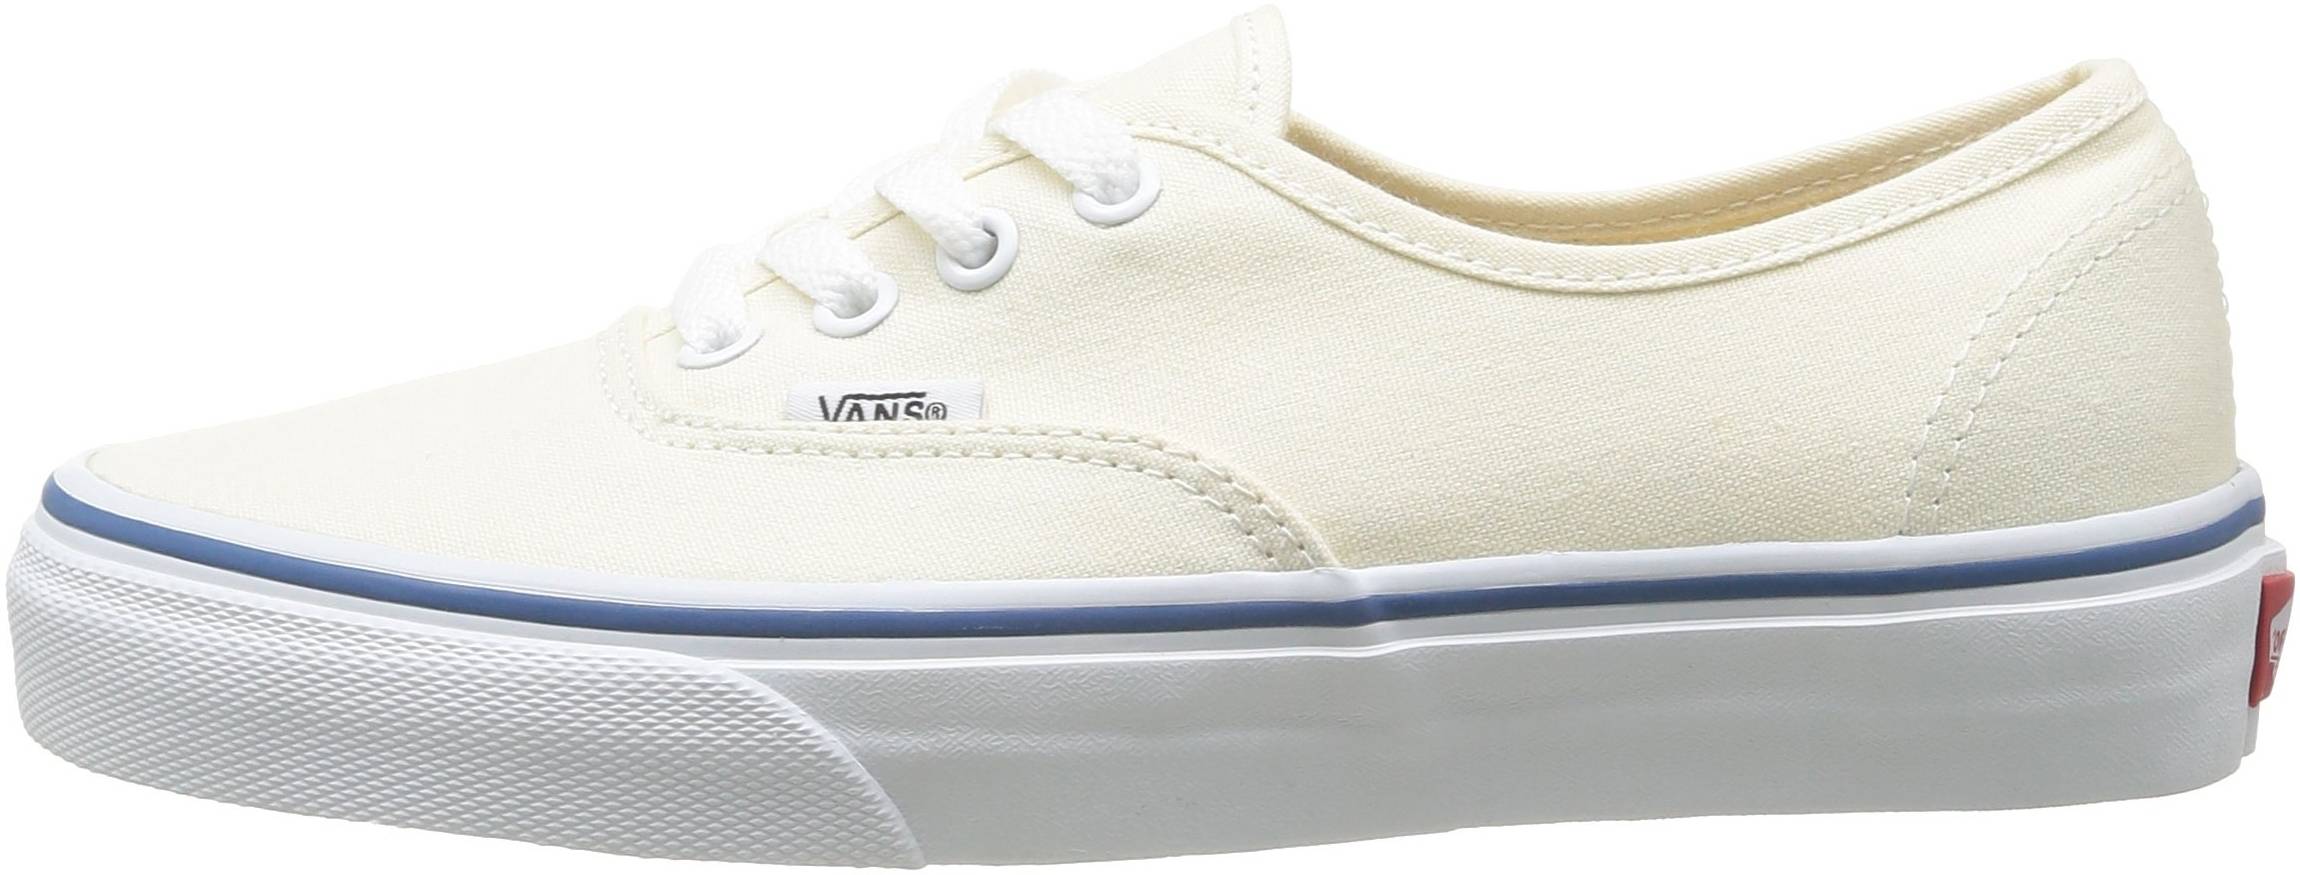 white vans sneakers for girls